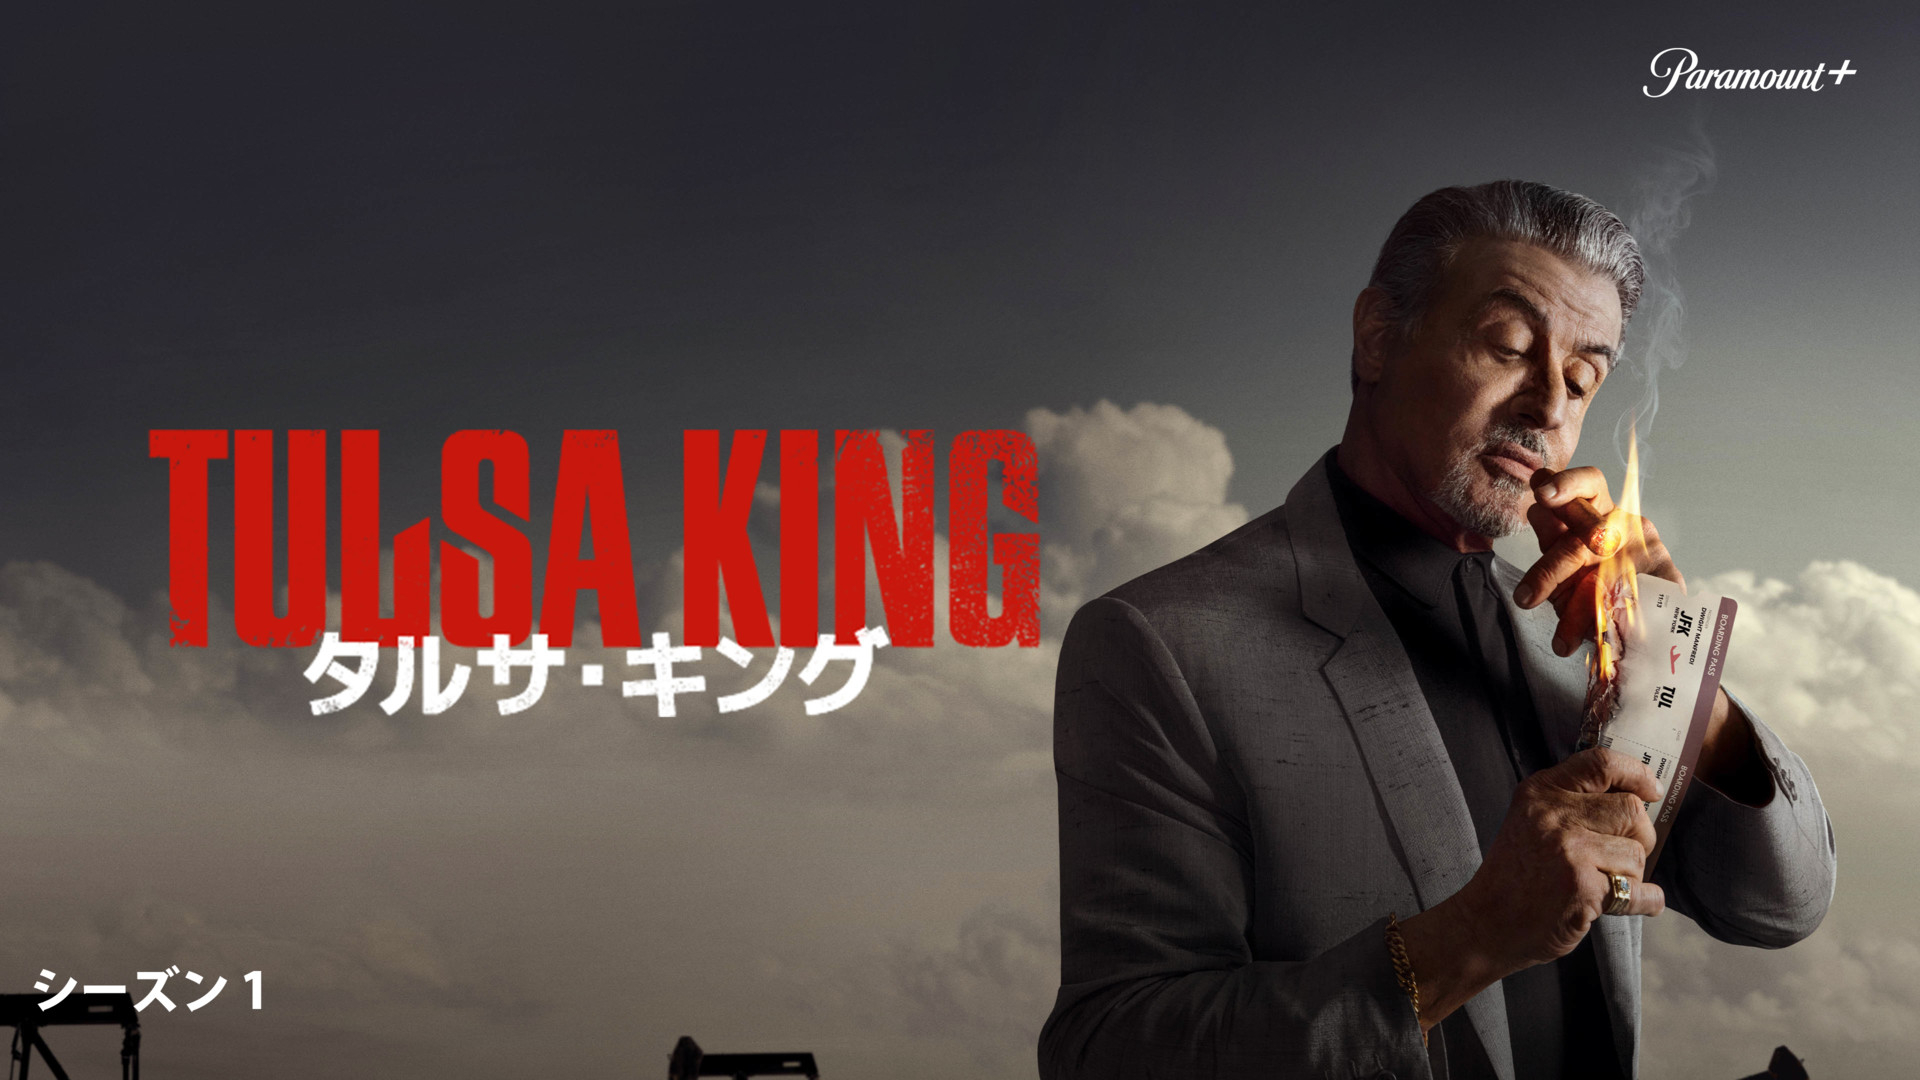 【ドラマ】「Tursa King」